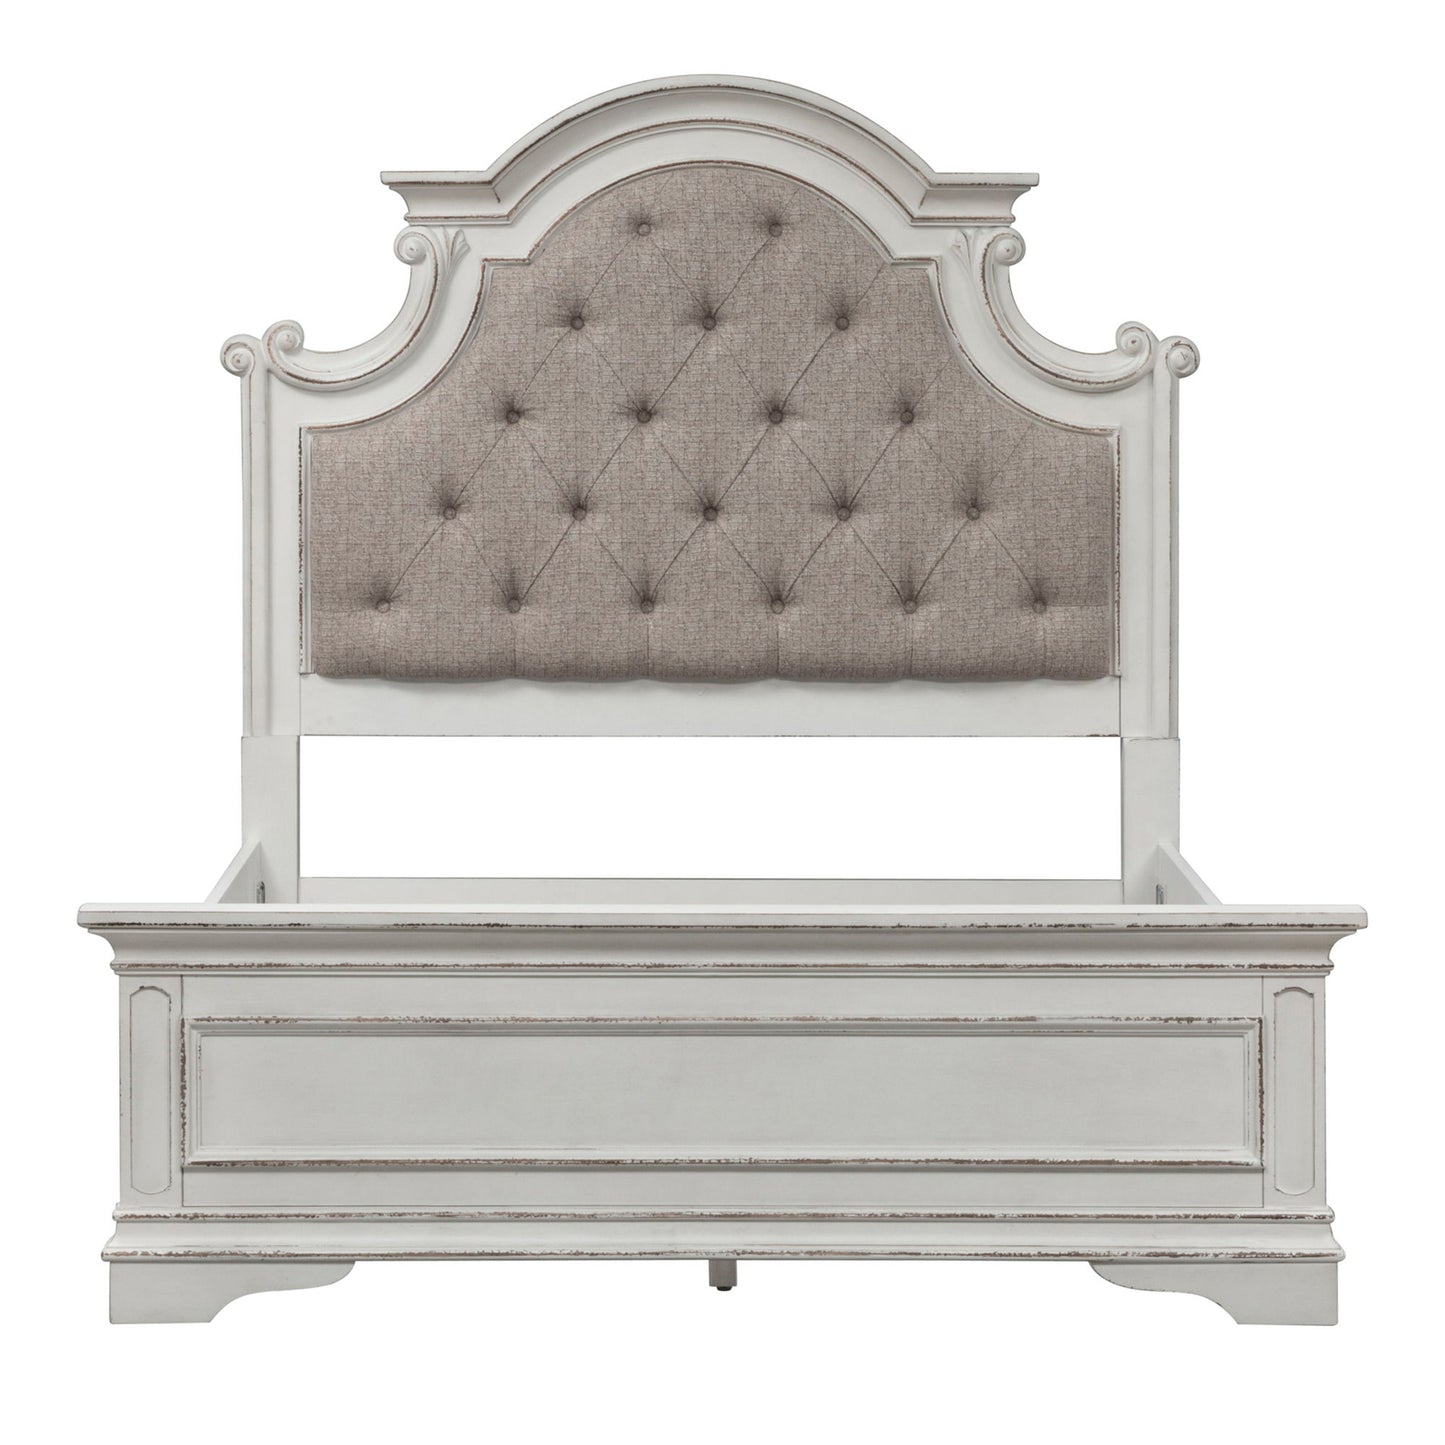 Magnolia Manor - Full Upholstered Bed - White